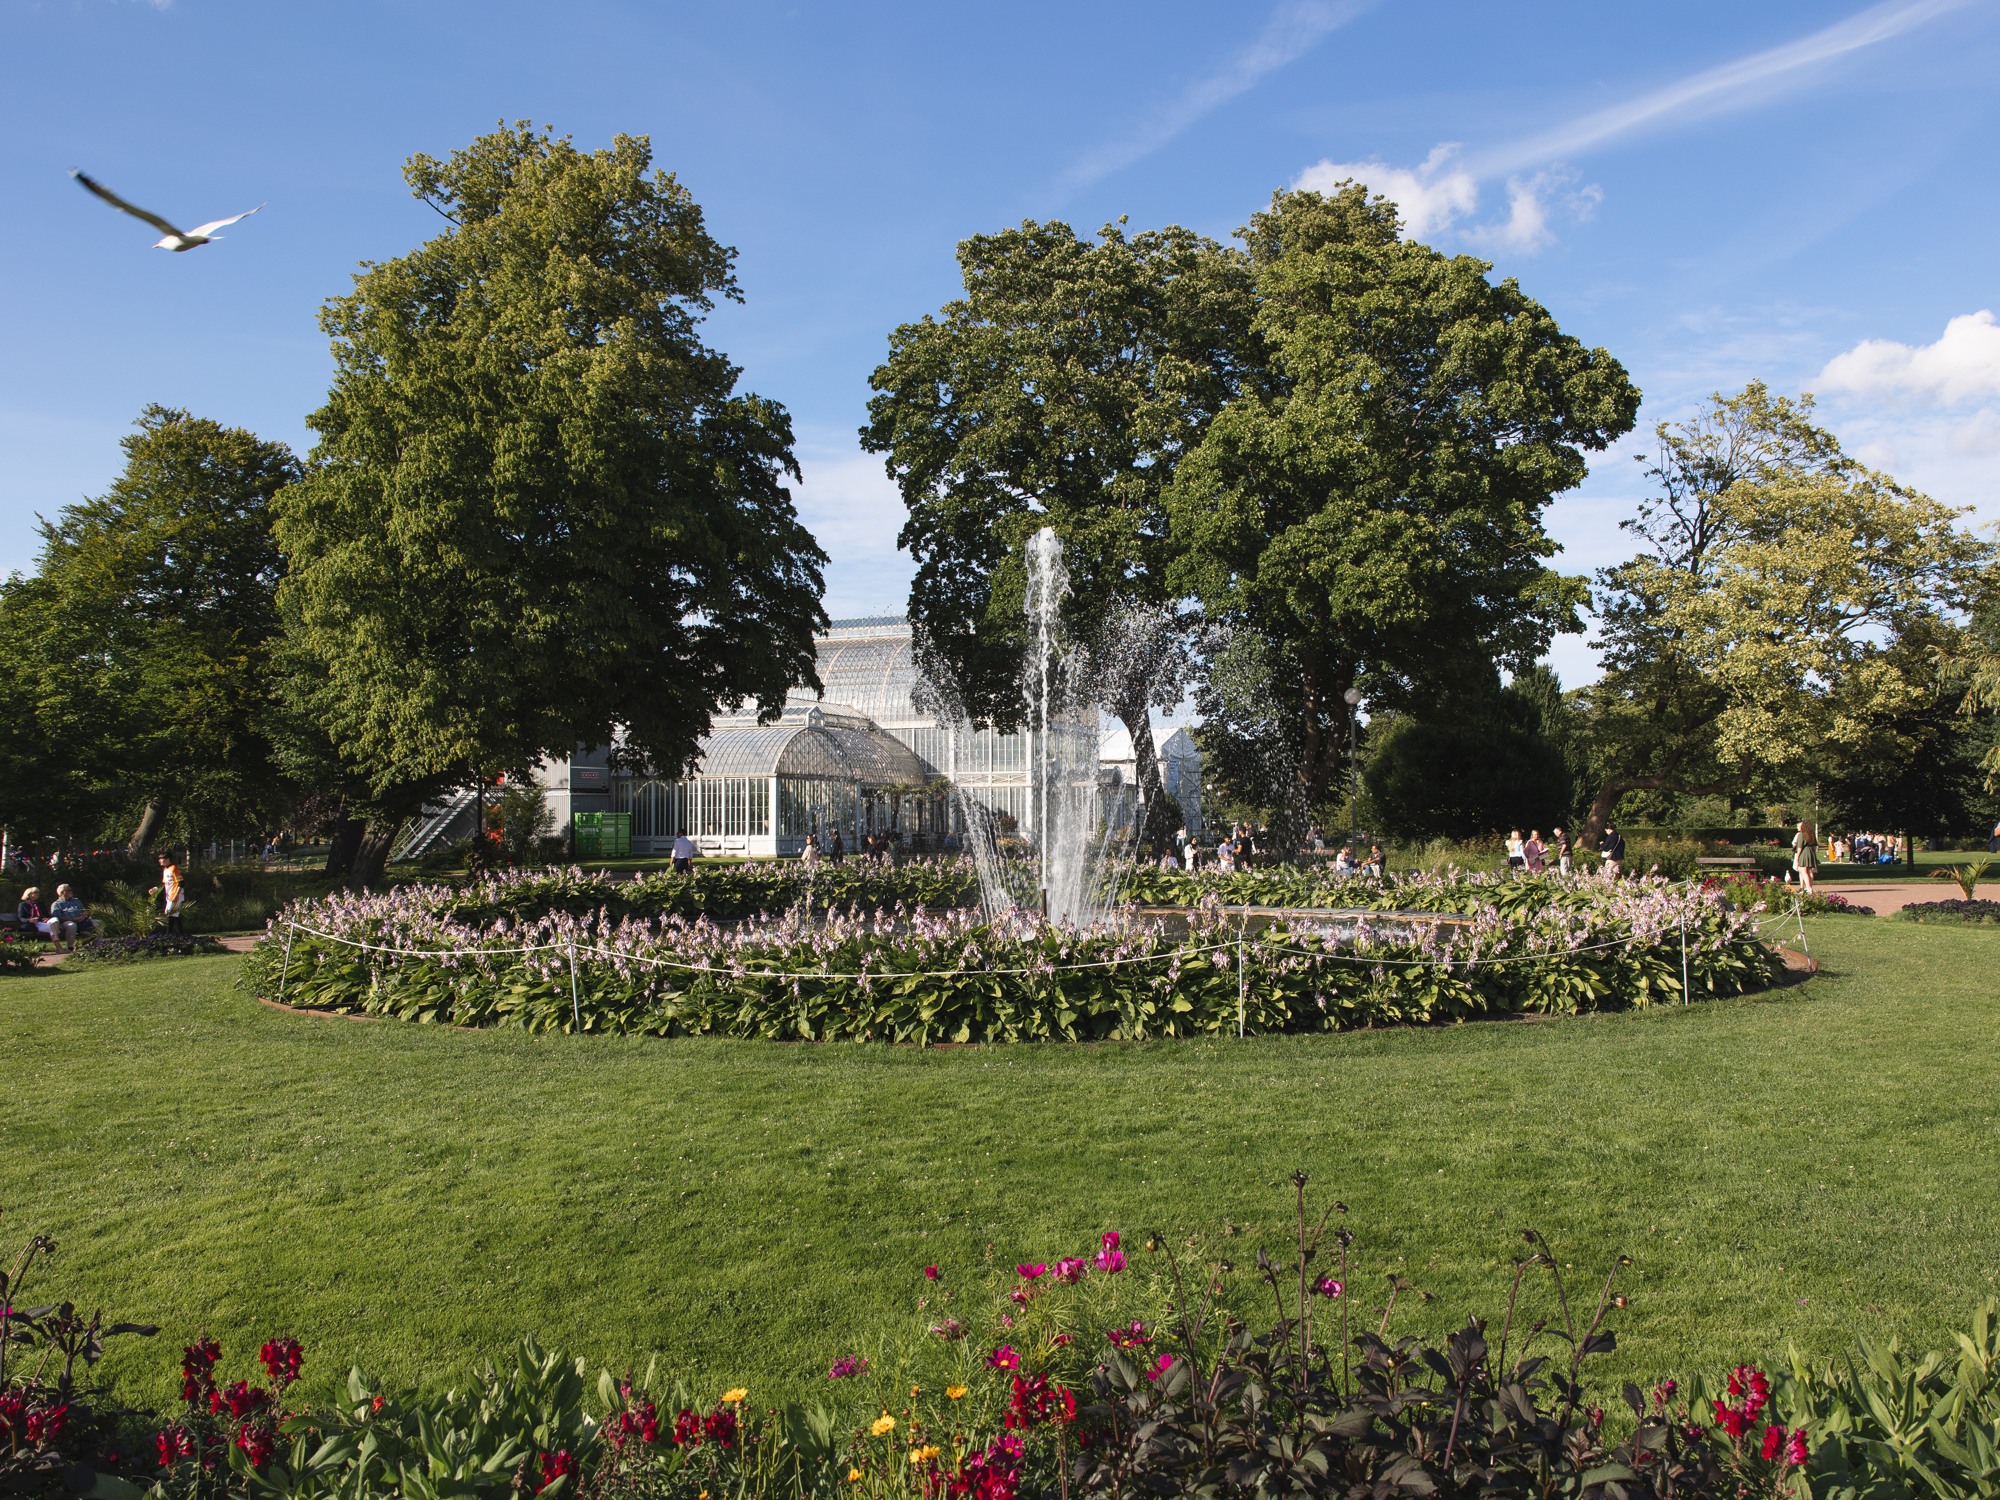 Rabatt och fontän i parken Trädgårdsföreningen i Göteborg.